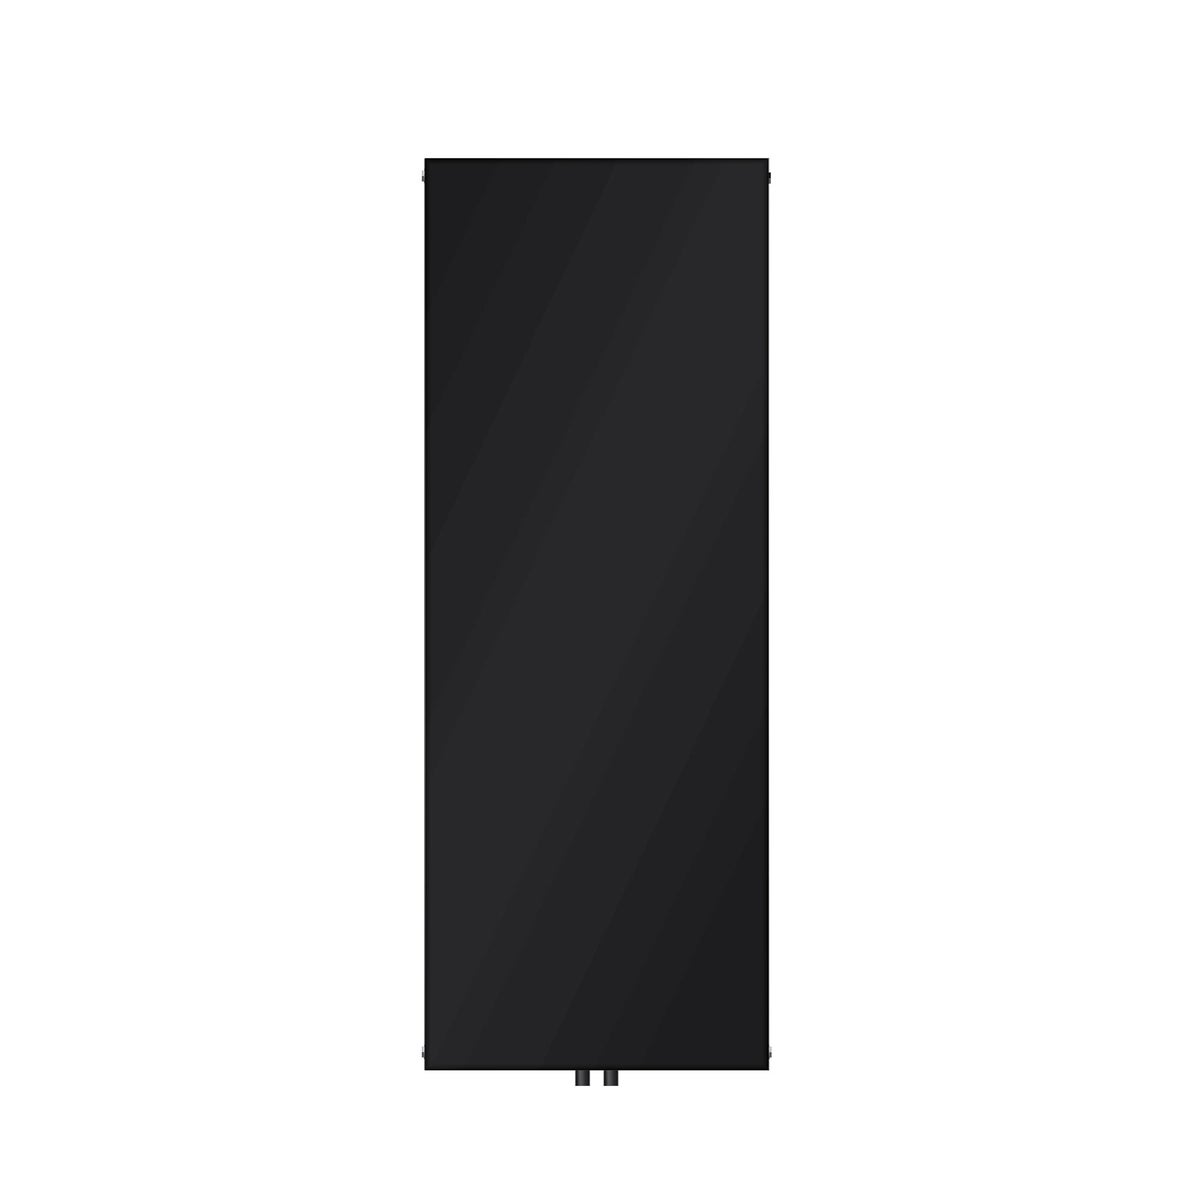 LuxeBath Badheizkörper 1600x604 mm Schwarz matt Flach Einlagig Design Heizkörper Mittelanschluss Vertikal Planheizkörper glatte Vorderseite Vertikalheizkörper Paneelheizkörper Flachheizkörper Heizwand